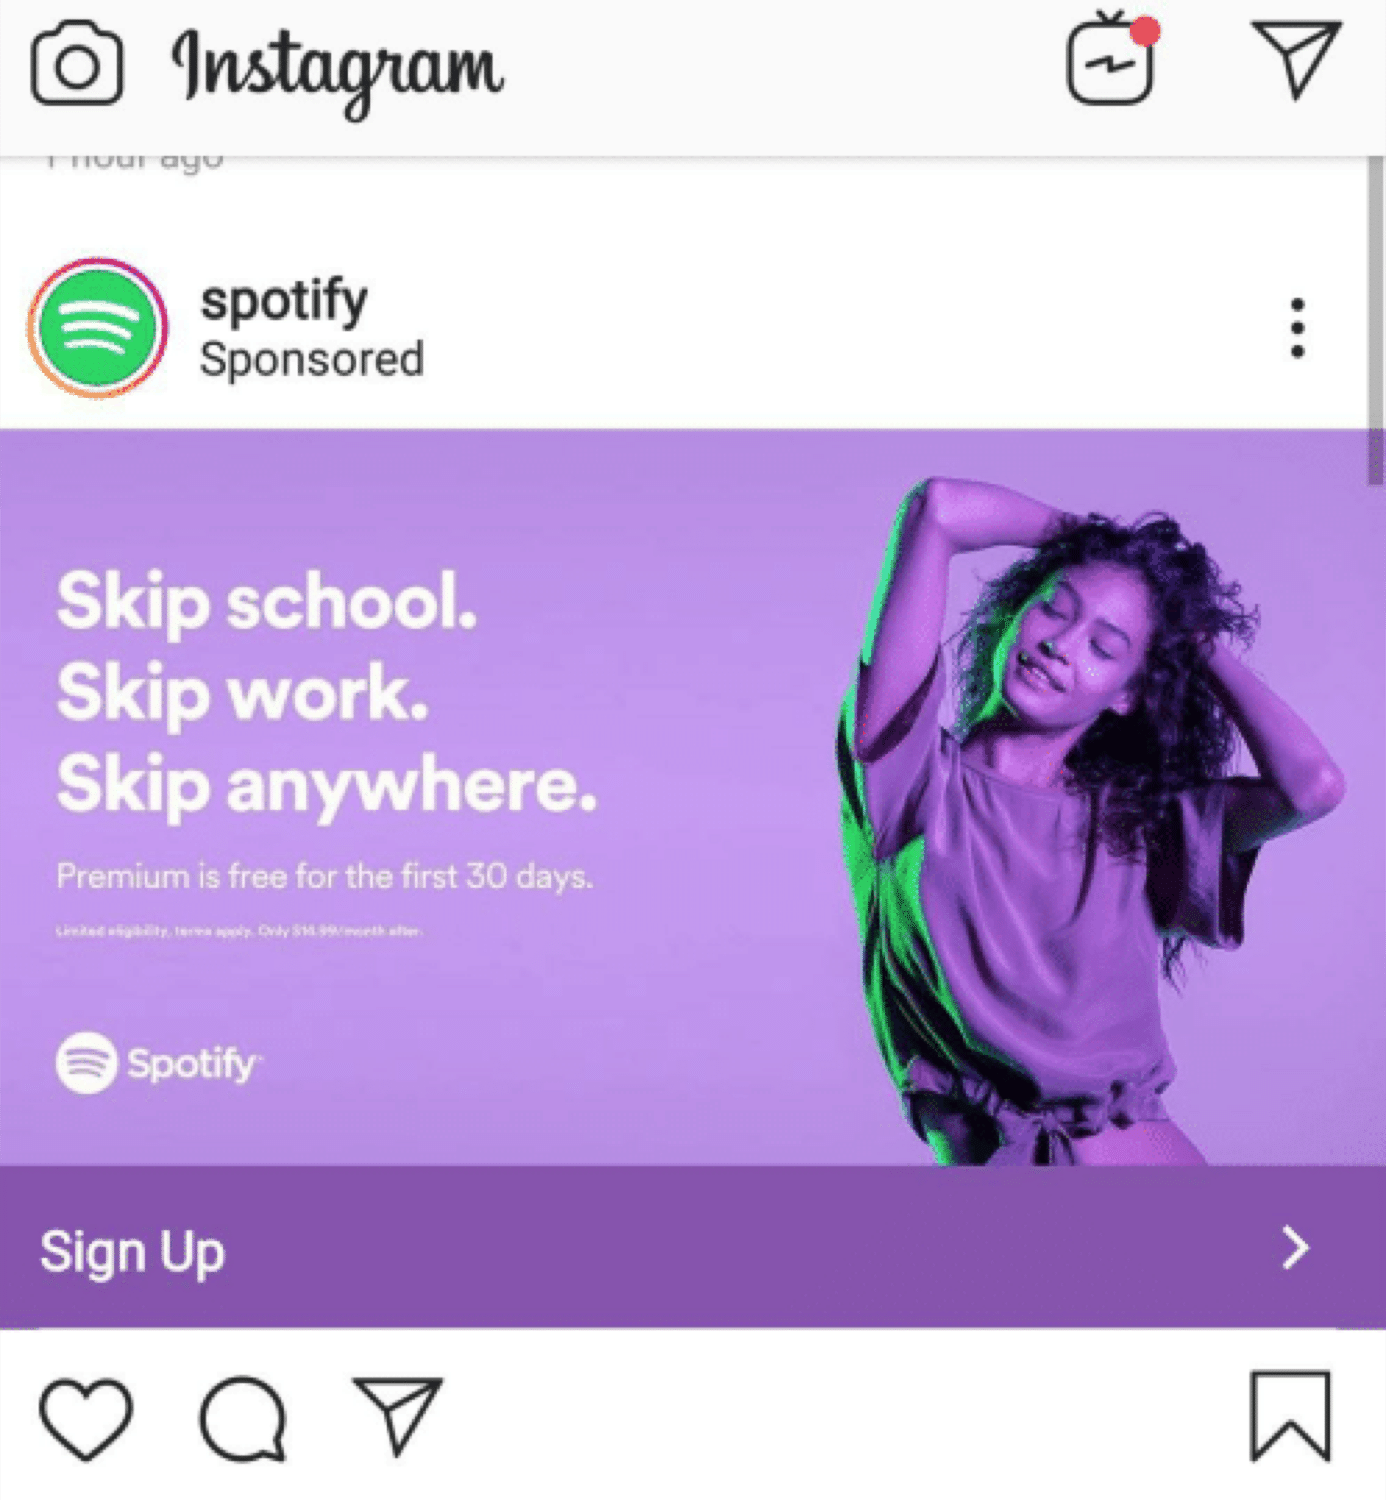 Un ejemplo de un anuncio de Instagram